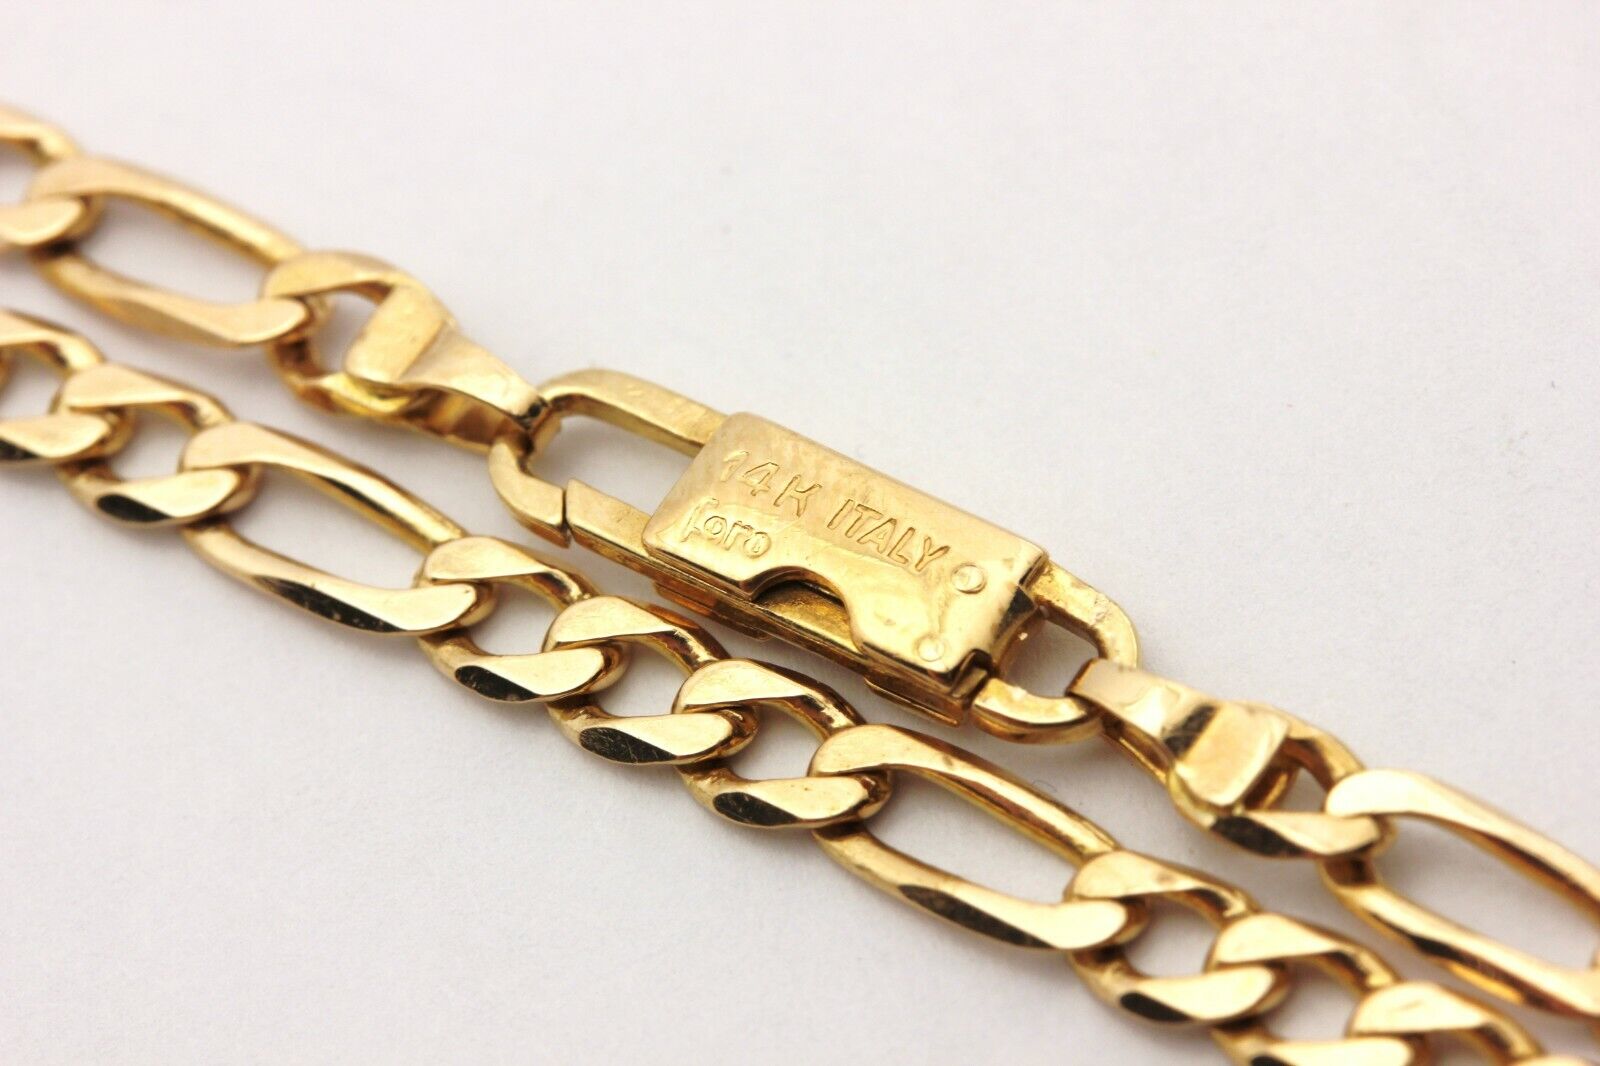 14K Gold Figaro Chain Bracelet